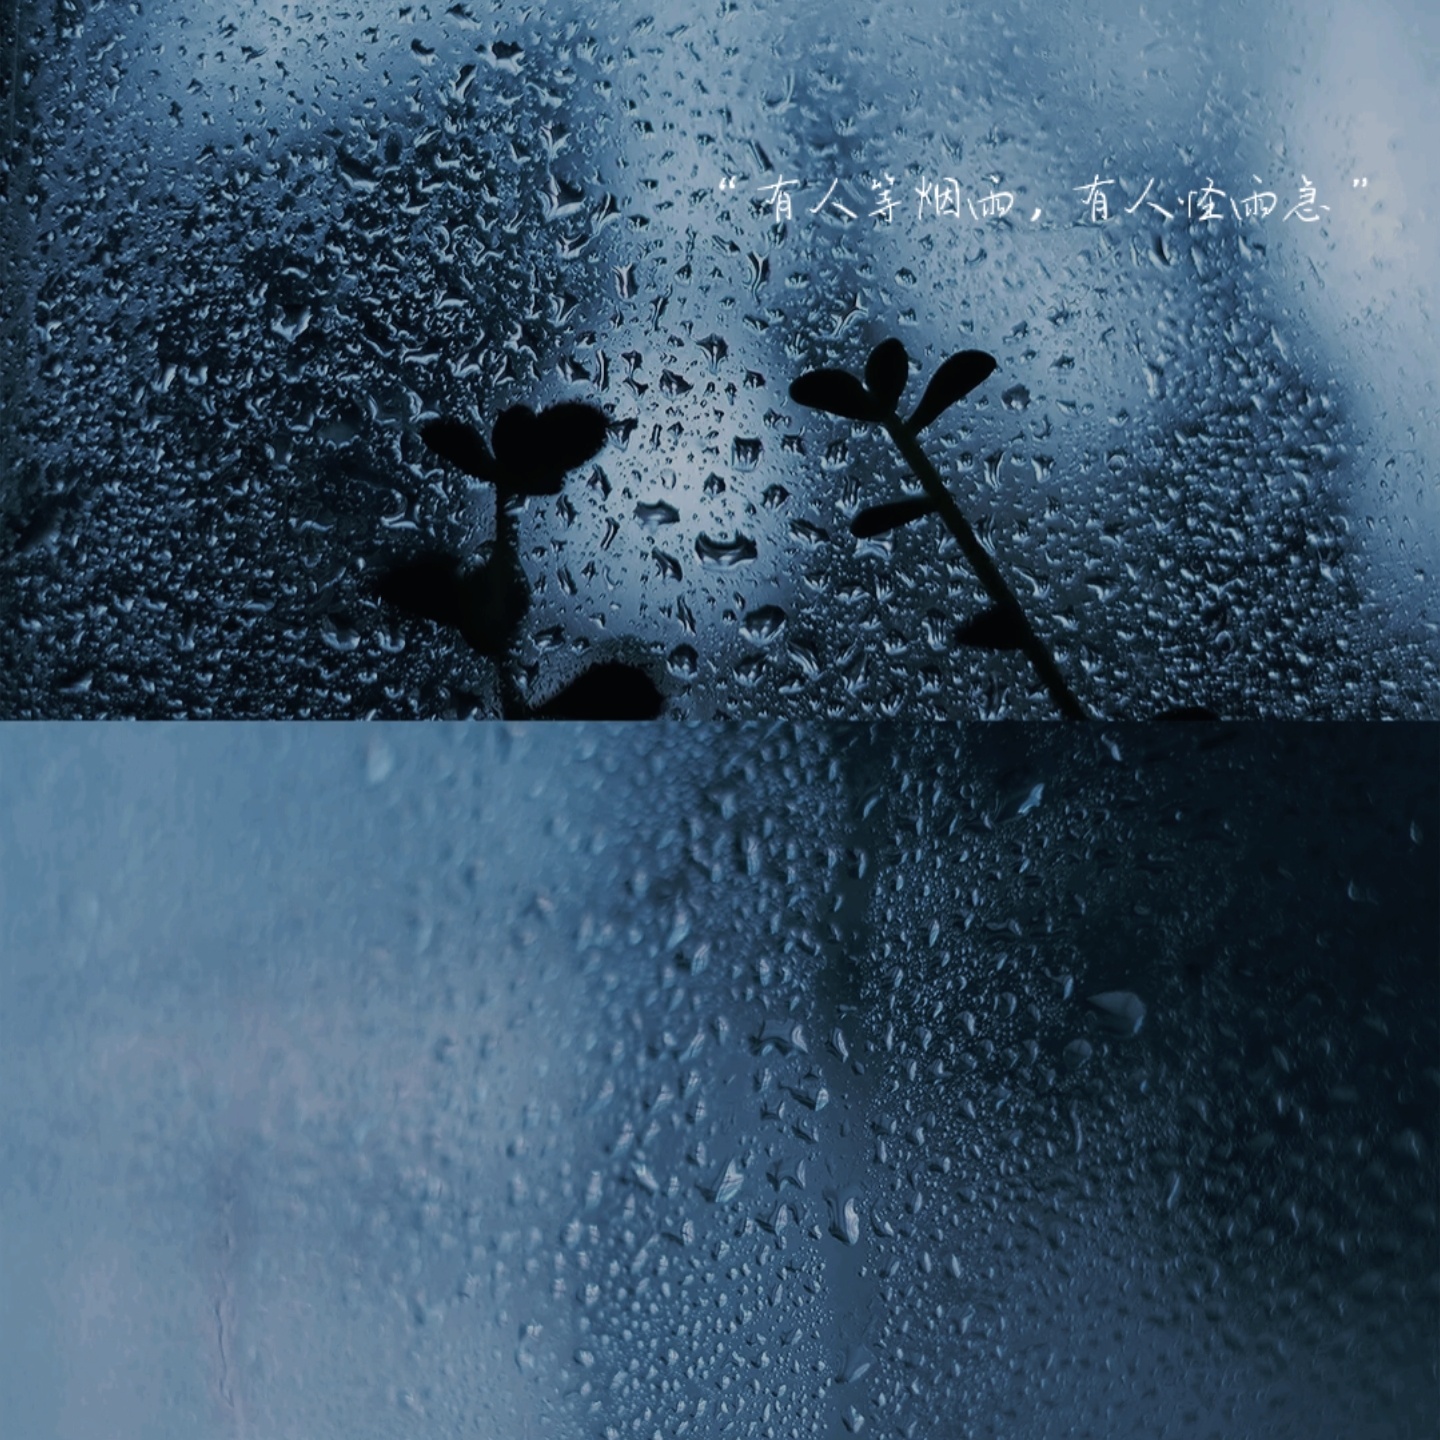 雨下整夜 我的爱溢出就像雨水 - 表情图片 - 25H.NET壁纸库